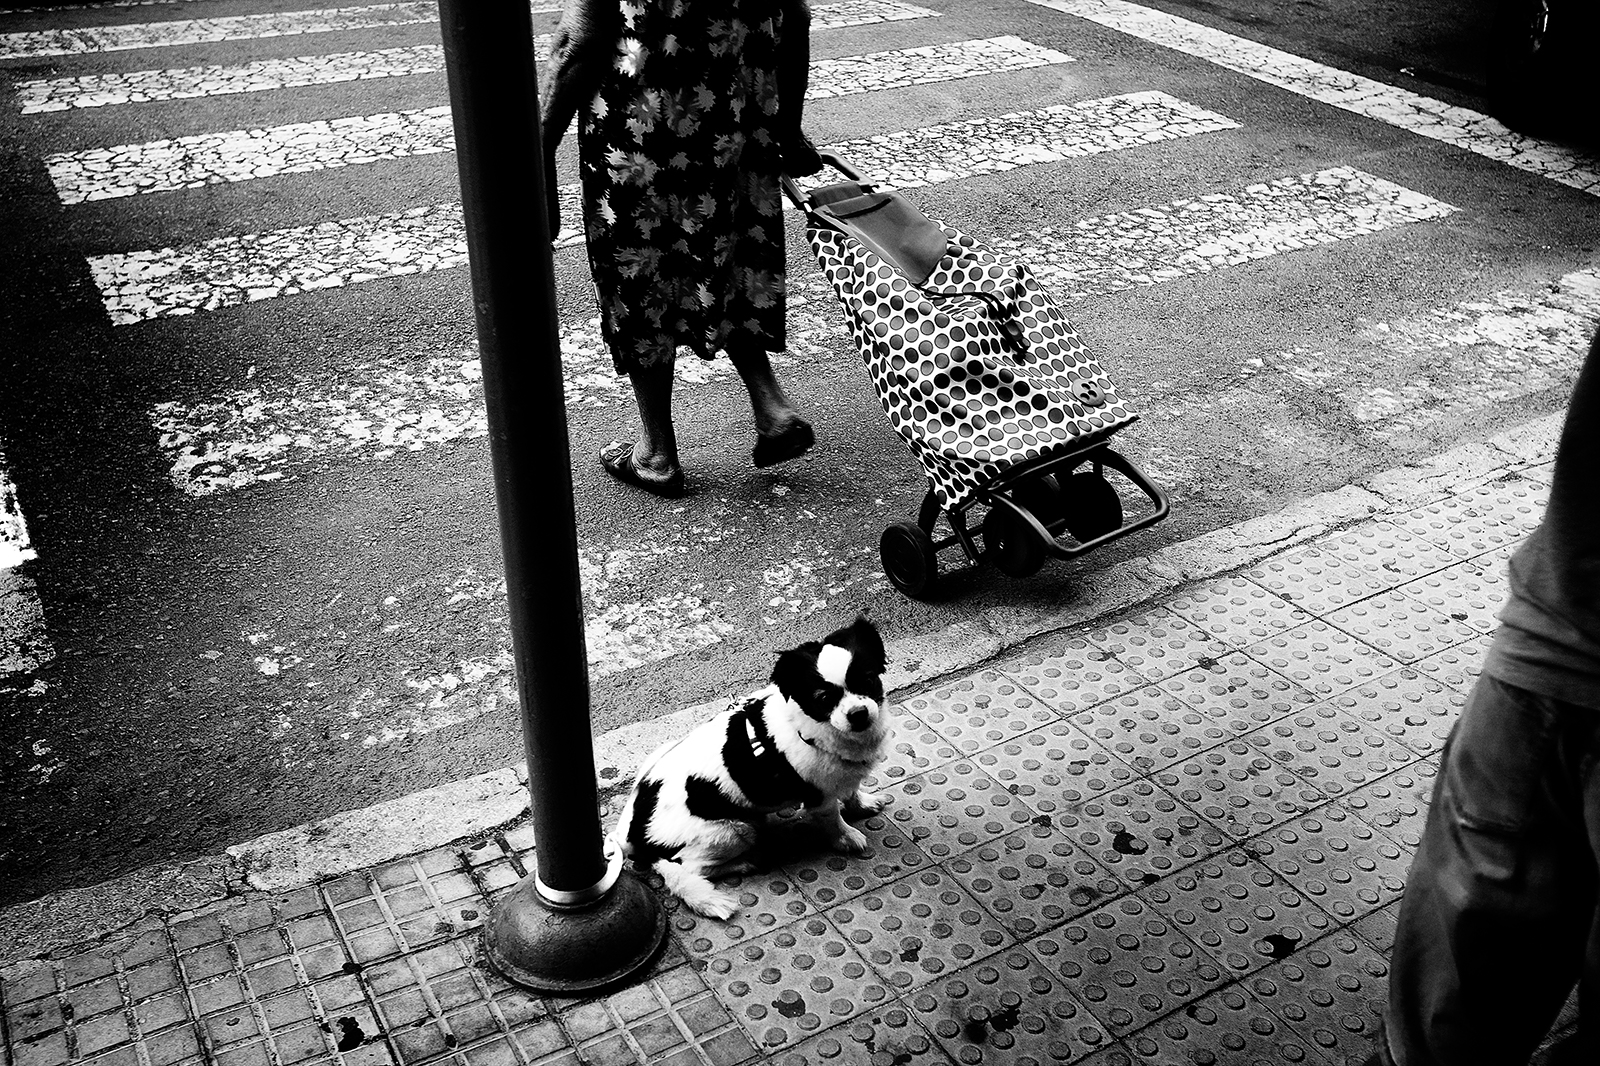 Dog by pedestrian crossing